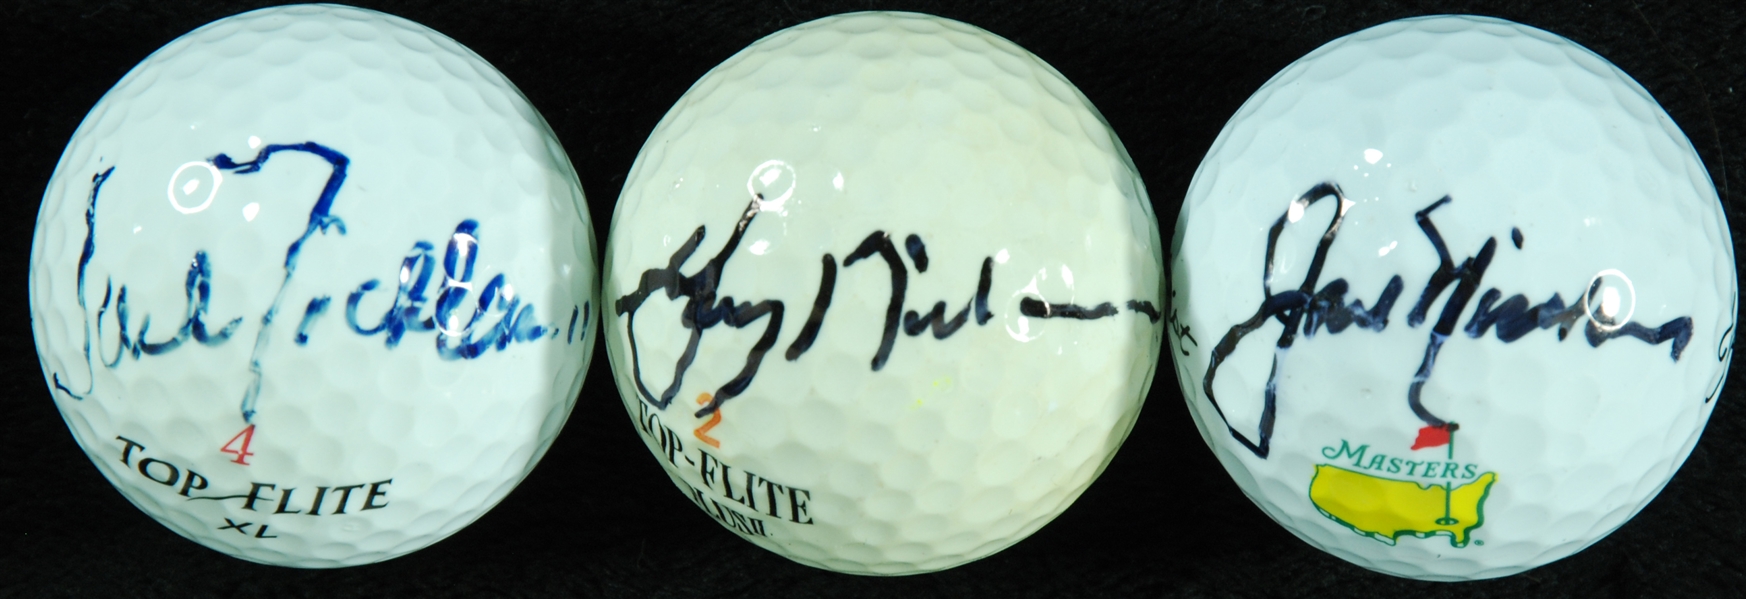 Jack Nicklaus, Gary Nicklaus & Jack Nicklaus Jr. Signed Golf Balls (3)